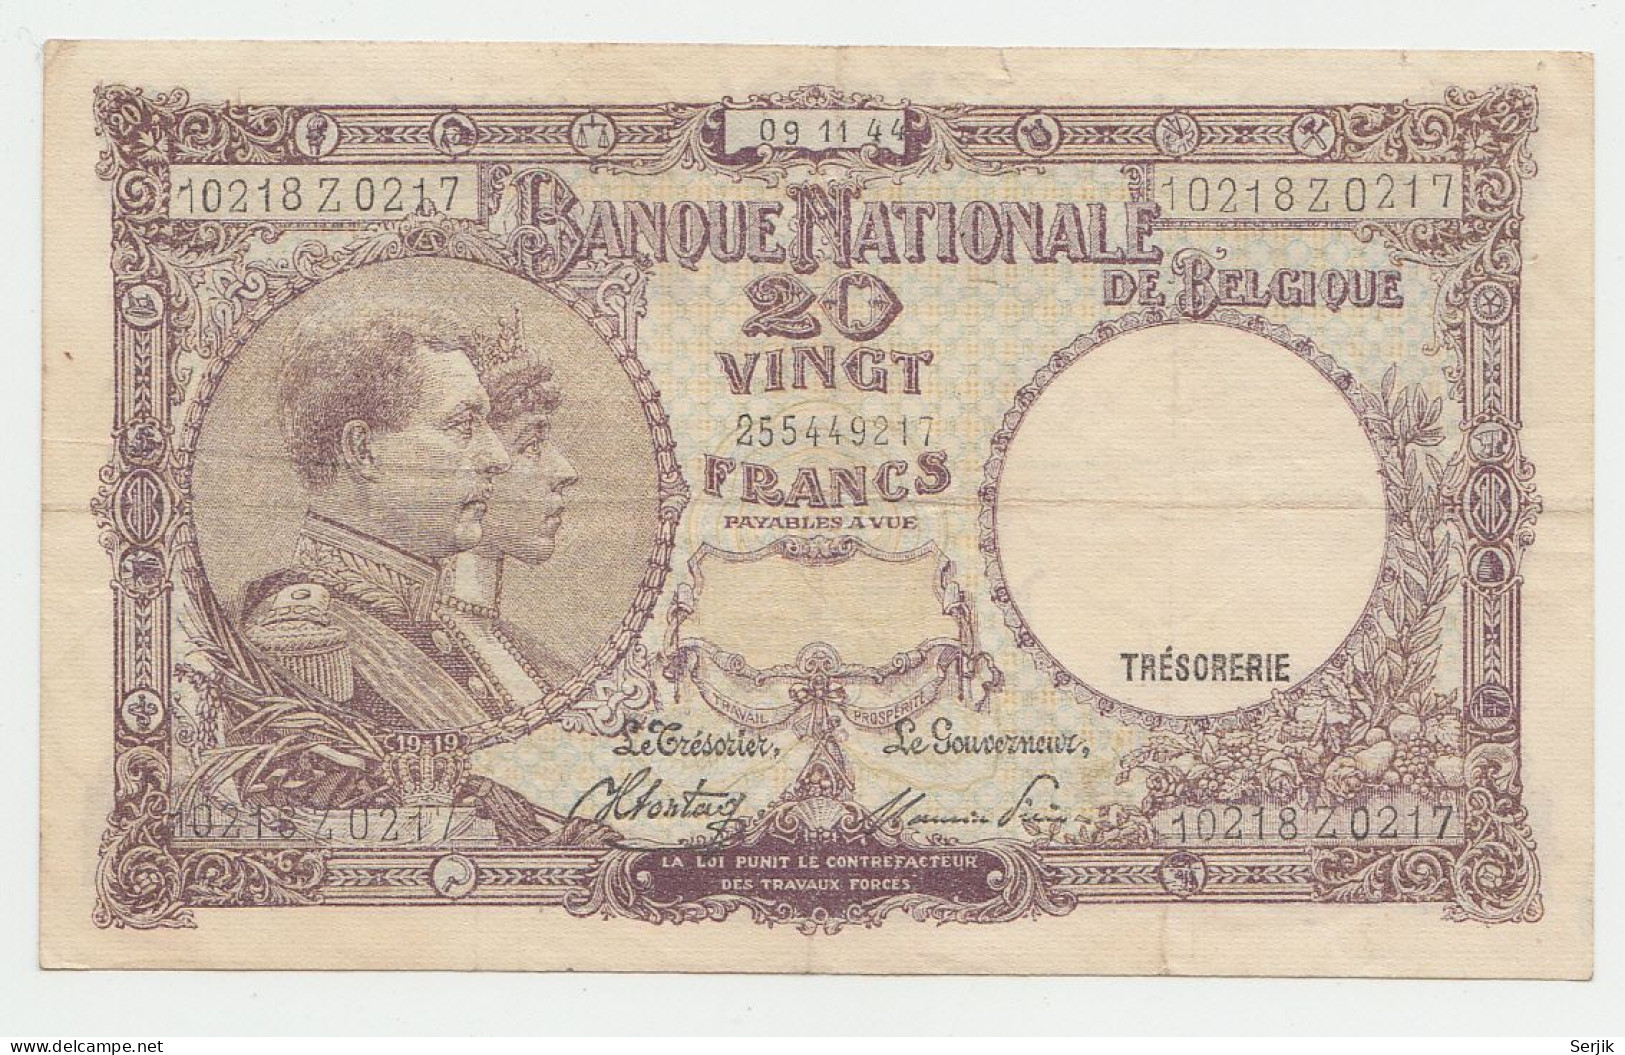 Belgium 20 Francs 1944 "F+" CRISP Banknote Pick 111 - 20 Francs